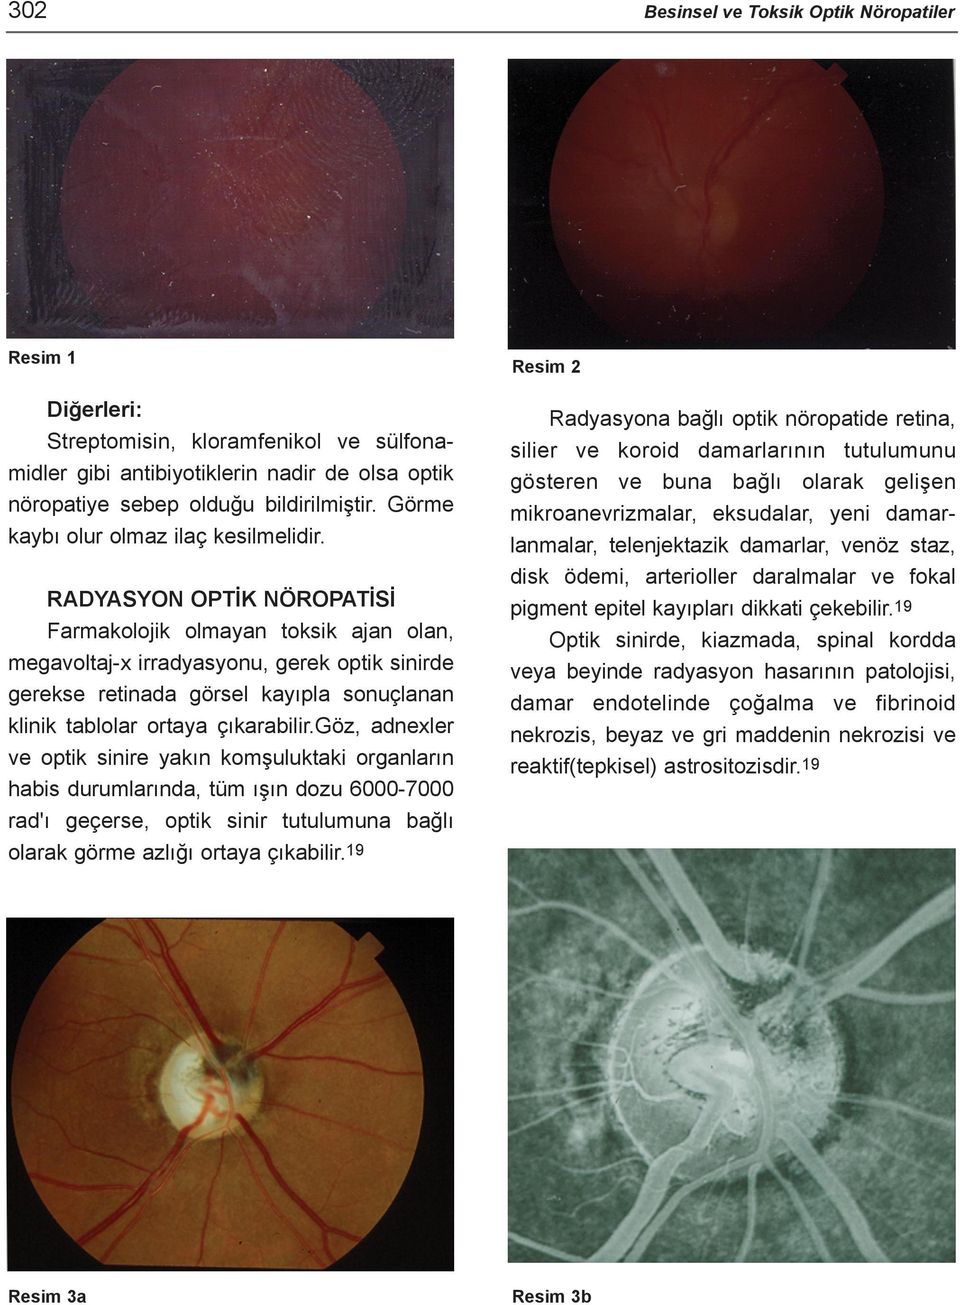 RADYASYON OPTÝK NÖROPATÝSÝ Farmakolojik olmayan toksik ajan olan, megavoltaj-x irradyasyonu, gerek optik sinirde gerekse retinada görsel kayýpla sonuçlanan klinik tablolar ortaya çýkarabilir.